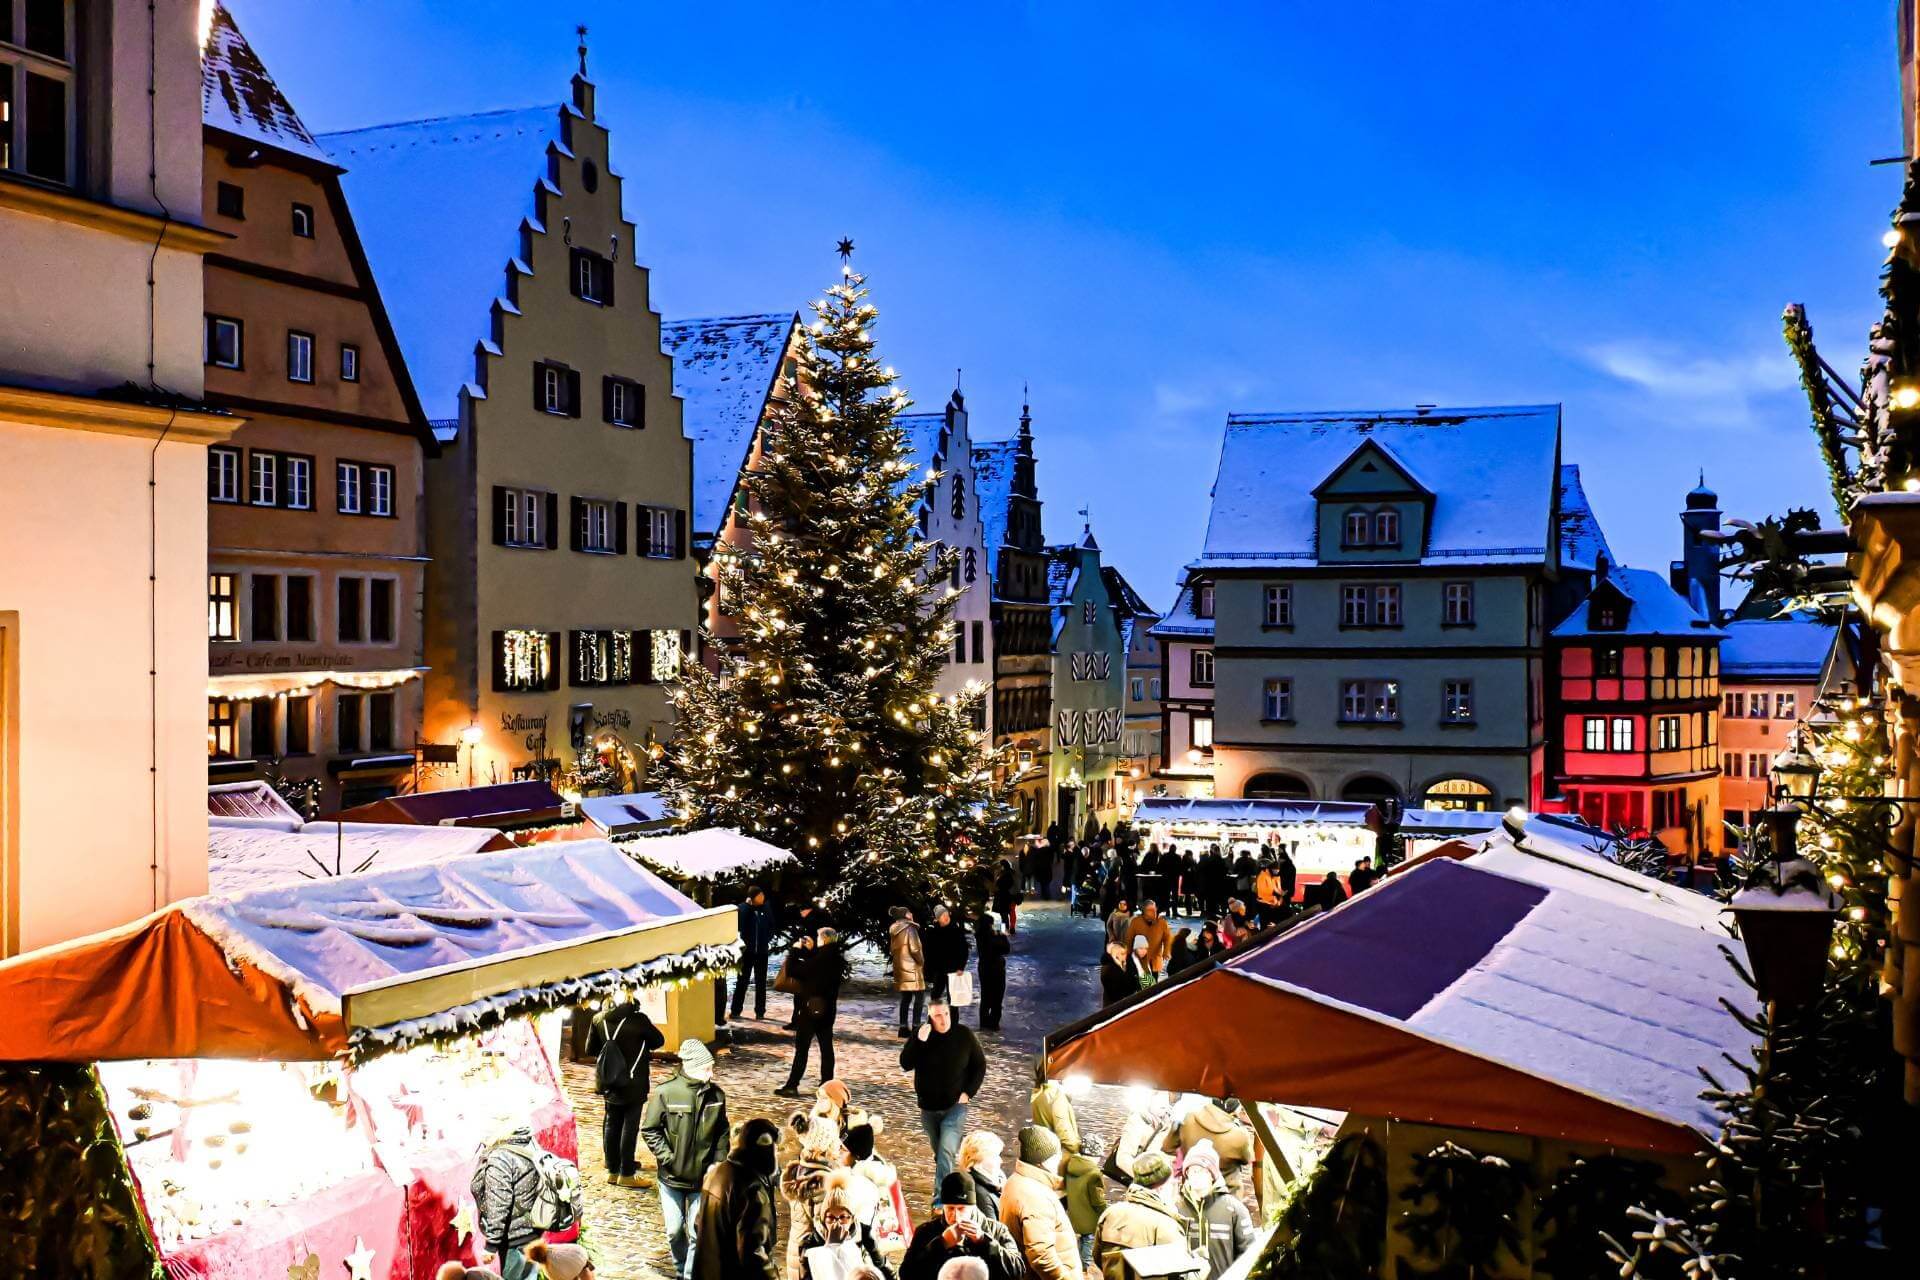 Weihnachtsmarkt Rothenburg ob der Tauber - Marktplatz mit beleuchtetem Weihnachtsbaum und dekorierten Marktständen - angiestravelroutes.com